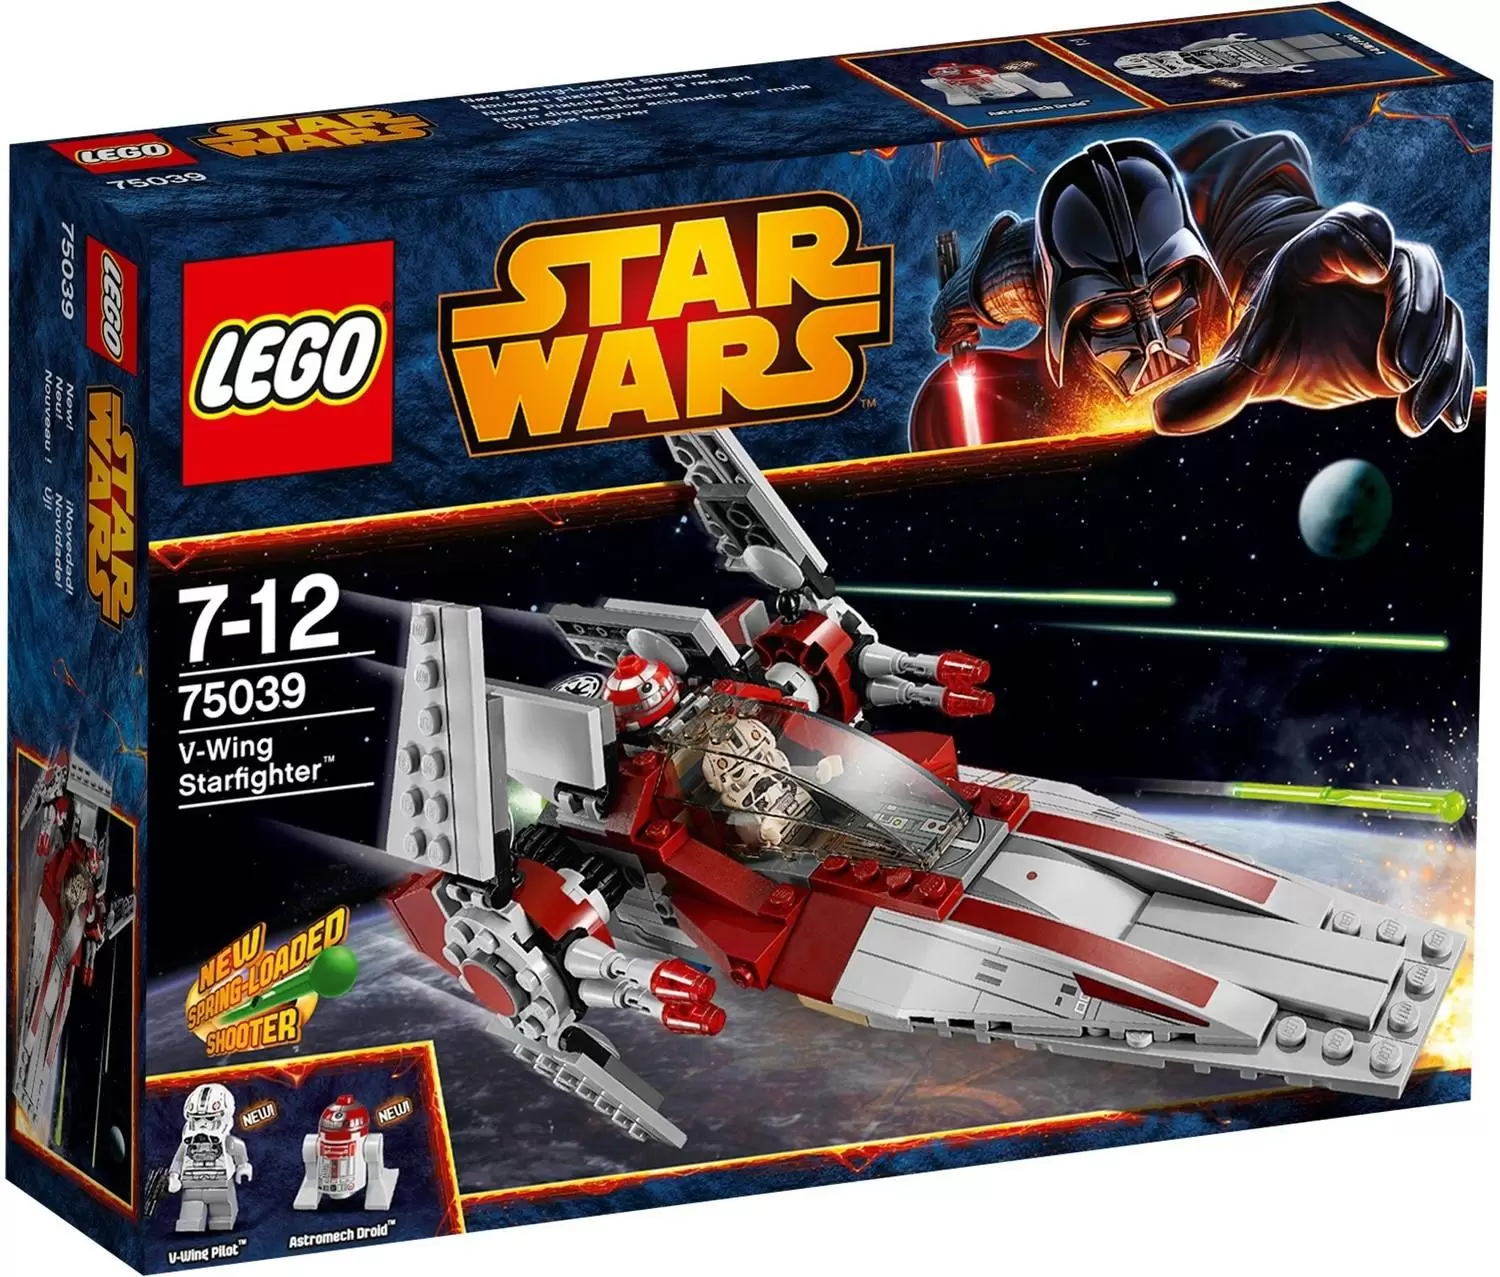 LEGO Star Wars - V-Wing Starfighter